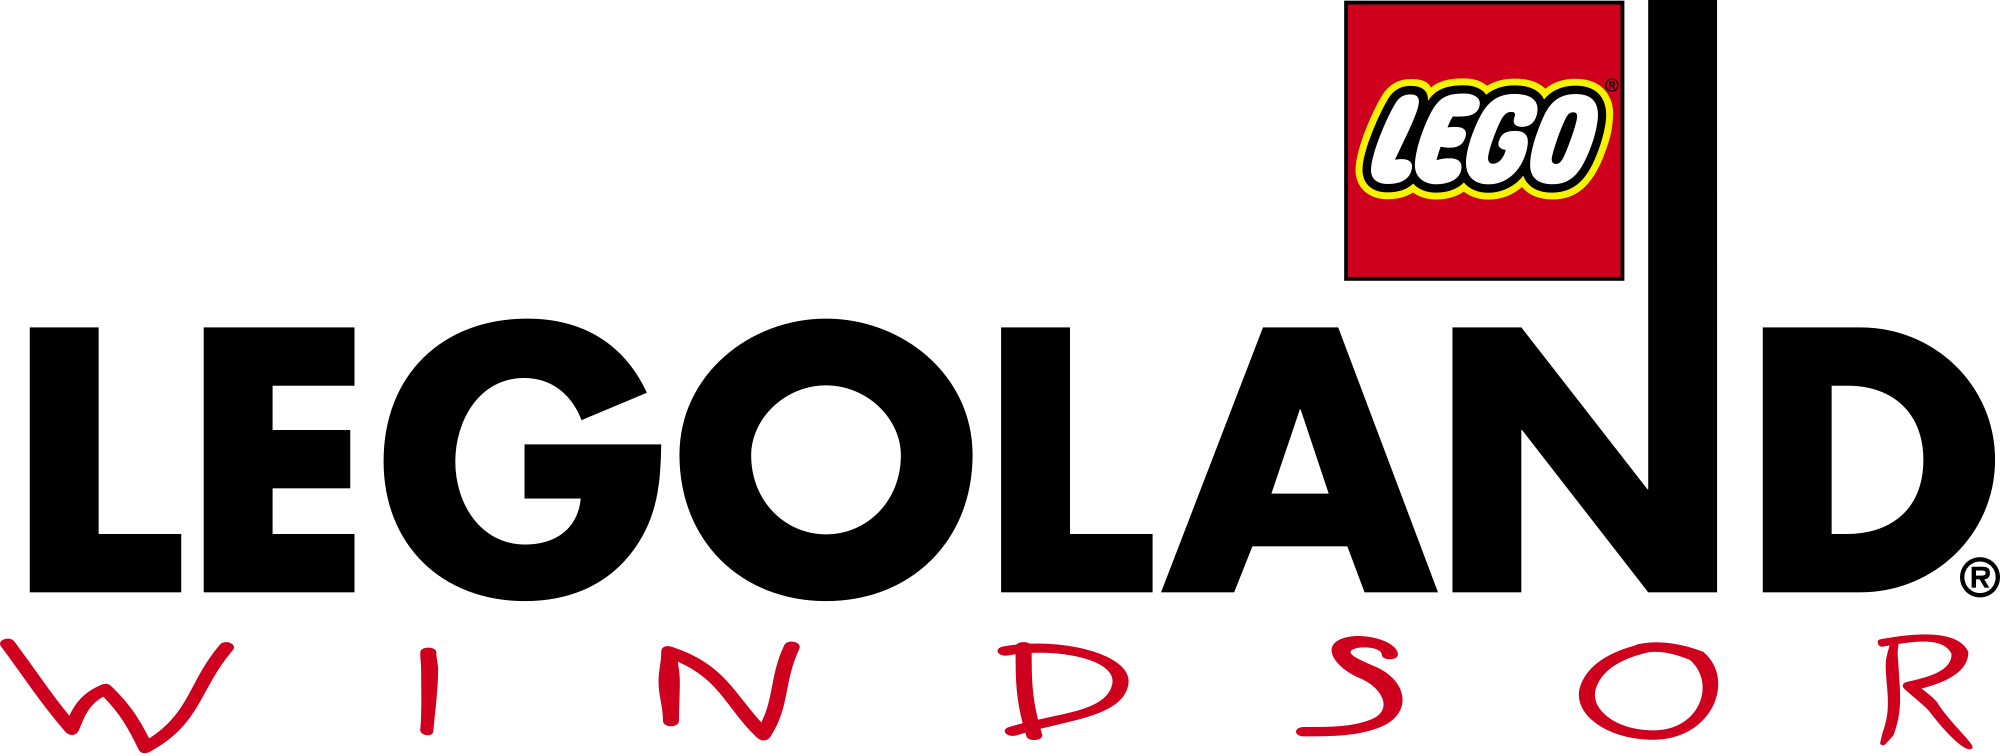 Legoland Windsor logo